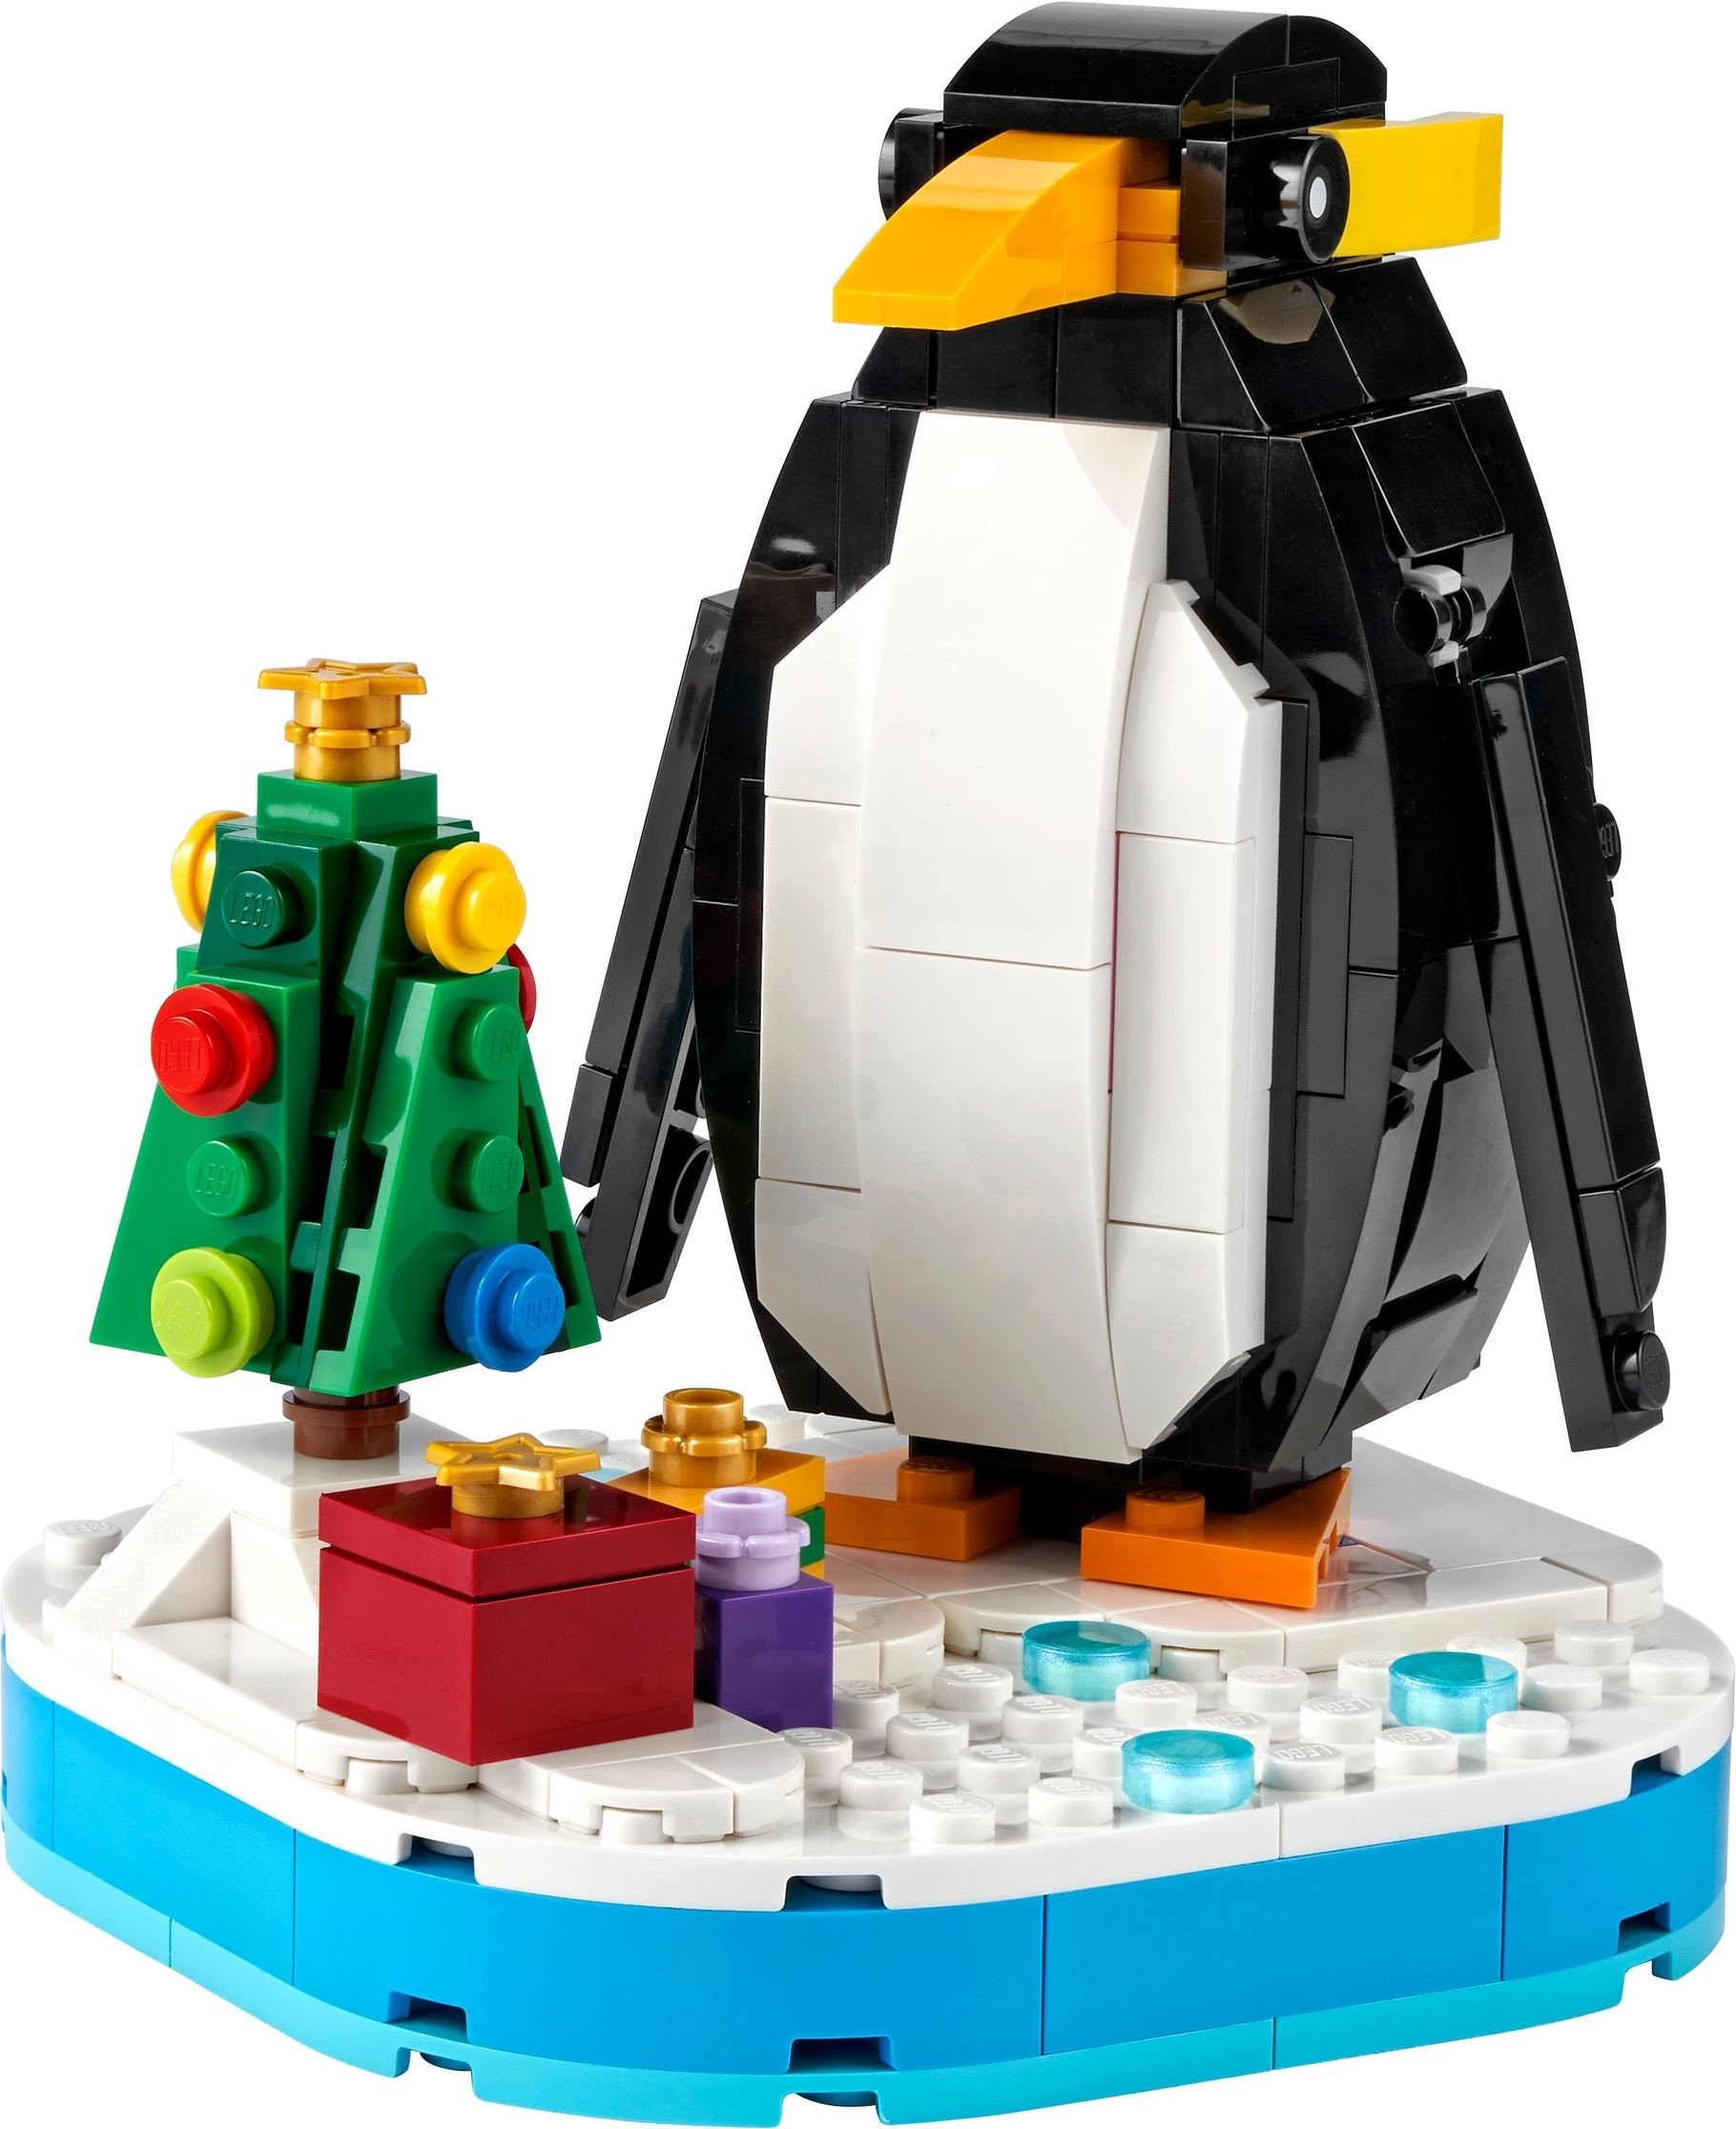 40498: Christmas Penguin